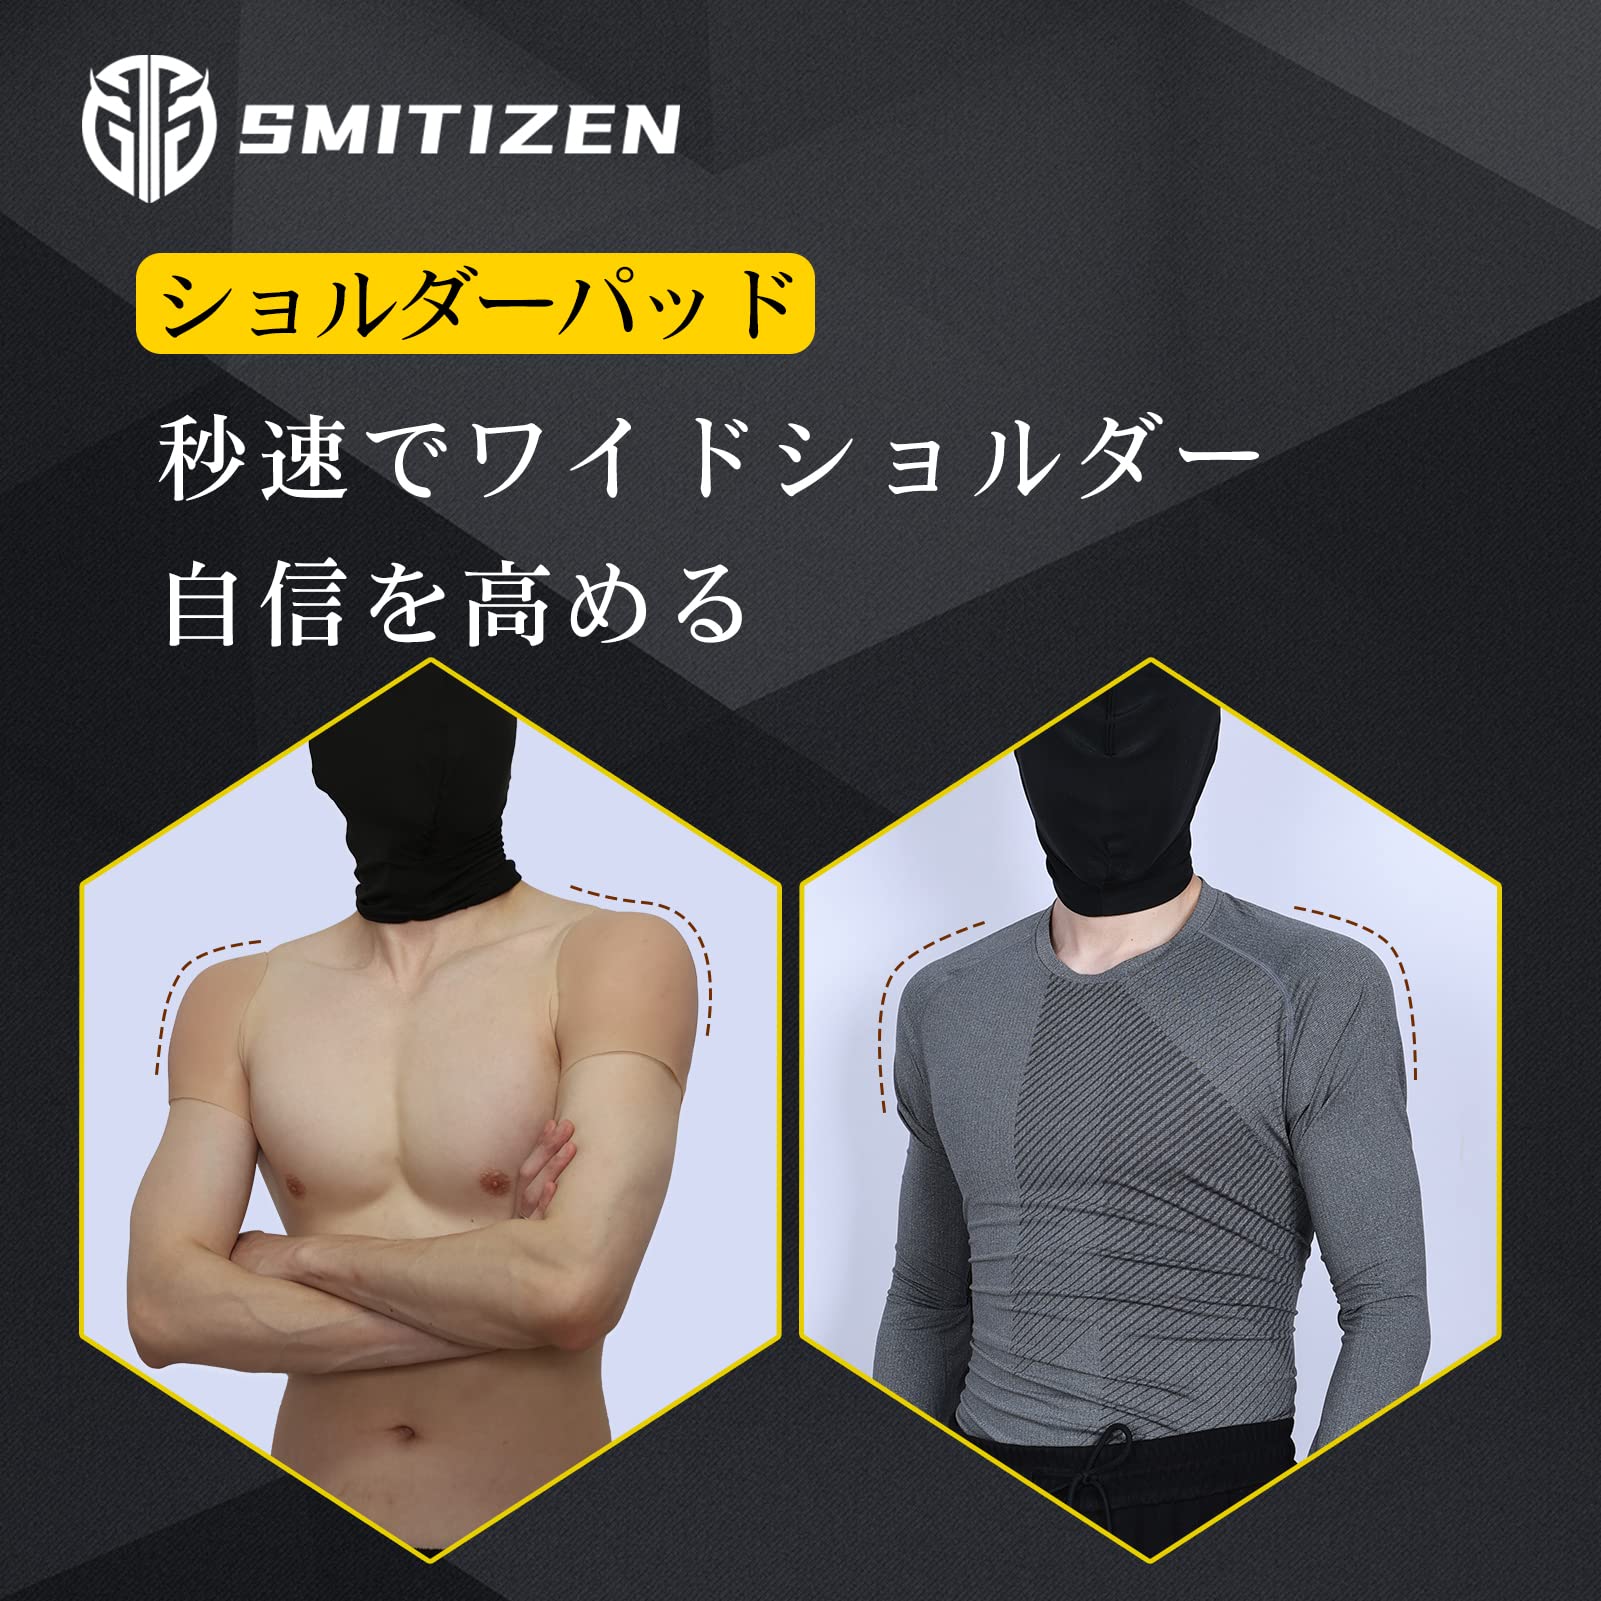 【L筋肉スタイル】 シリコン製ショルダーパッド マッスル強調 肩幅調整用パッド 太い肩のサポート